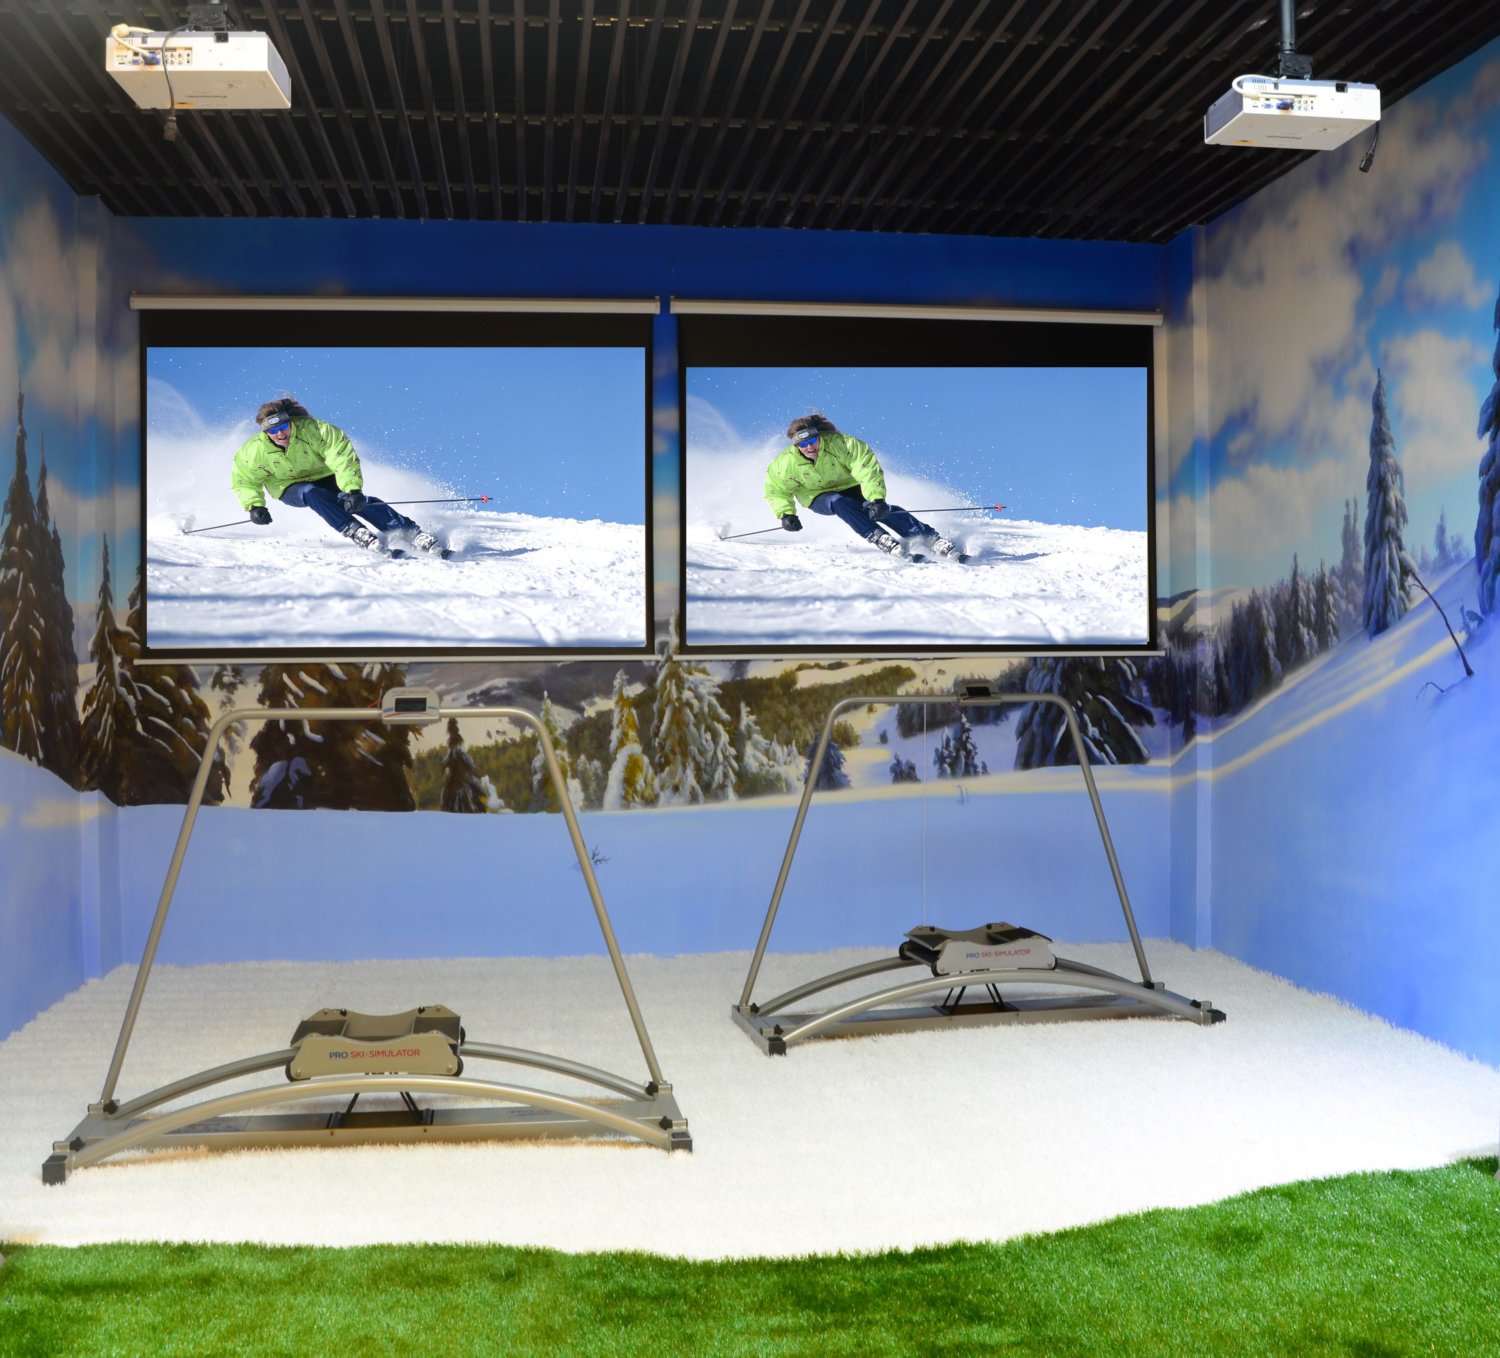 室内模拟滑雪场（创意文案，此图需PS，将白板P上滑雪图）_snr.jpg